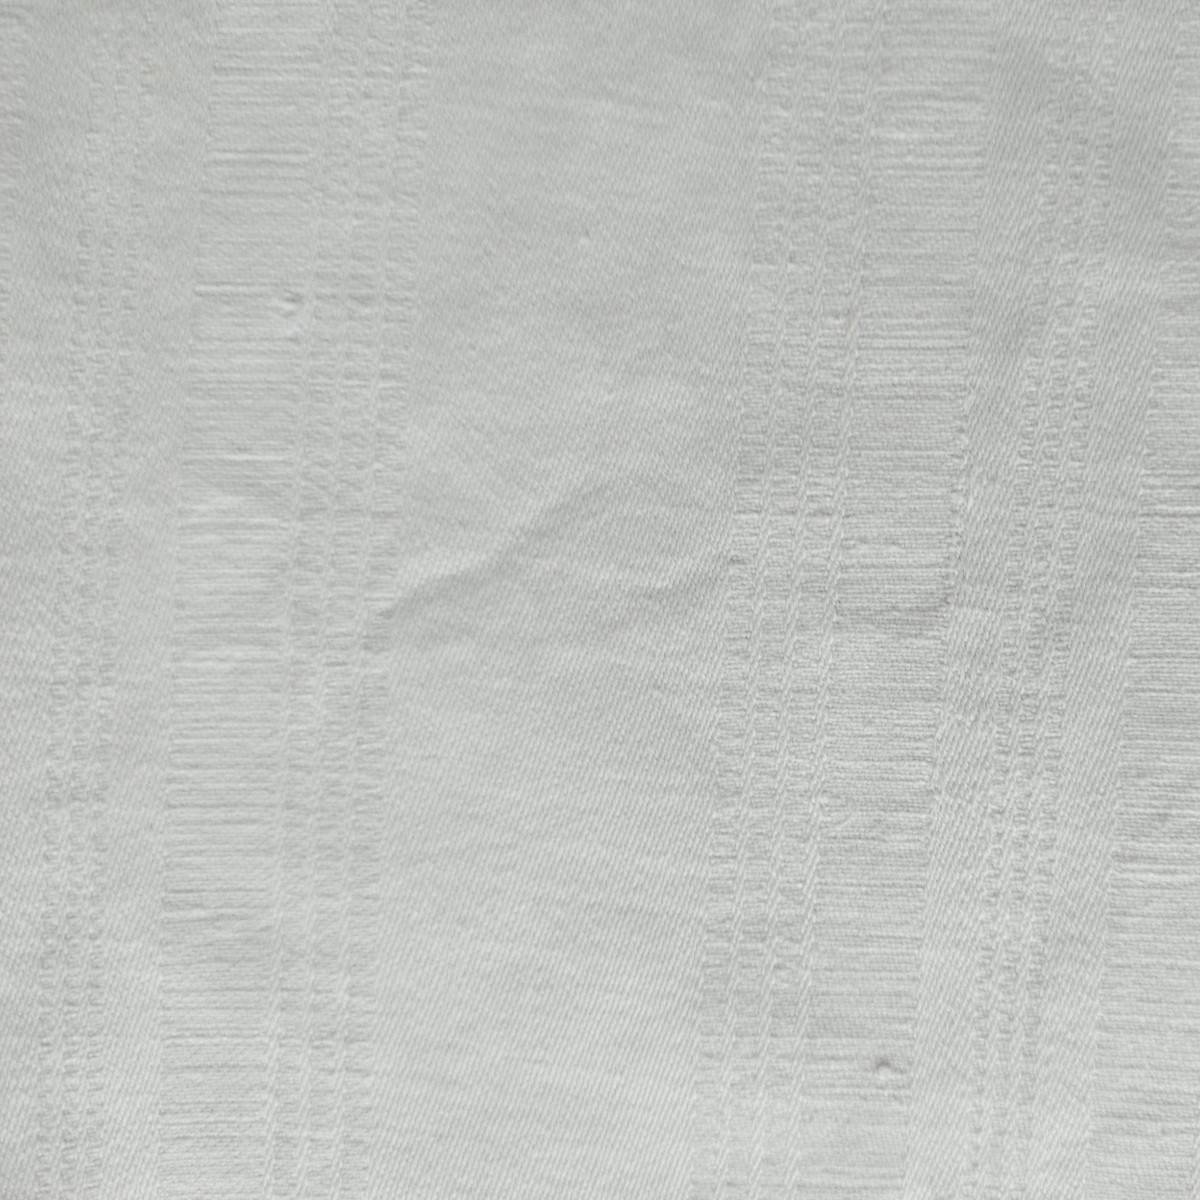 ダマスクリネンテキスタイル ヨーロッパセミアンティーク リネン100% テーブルクロス、掛布 手織布 ホワイト